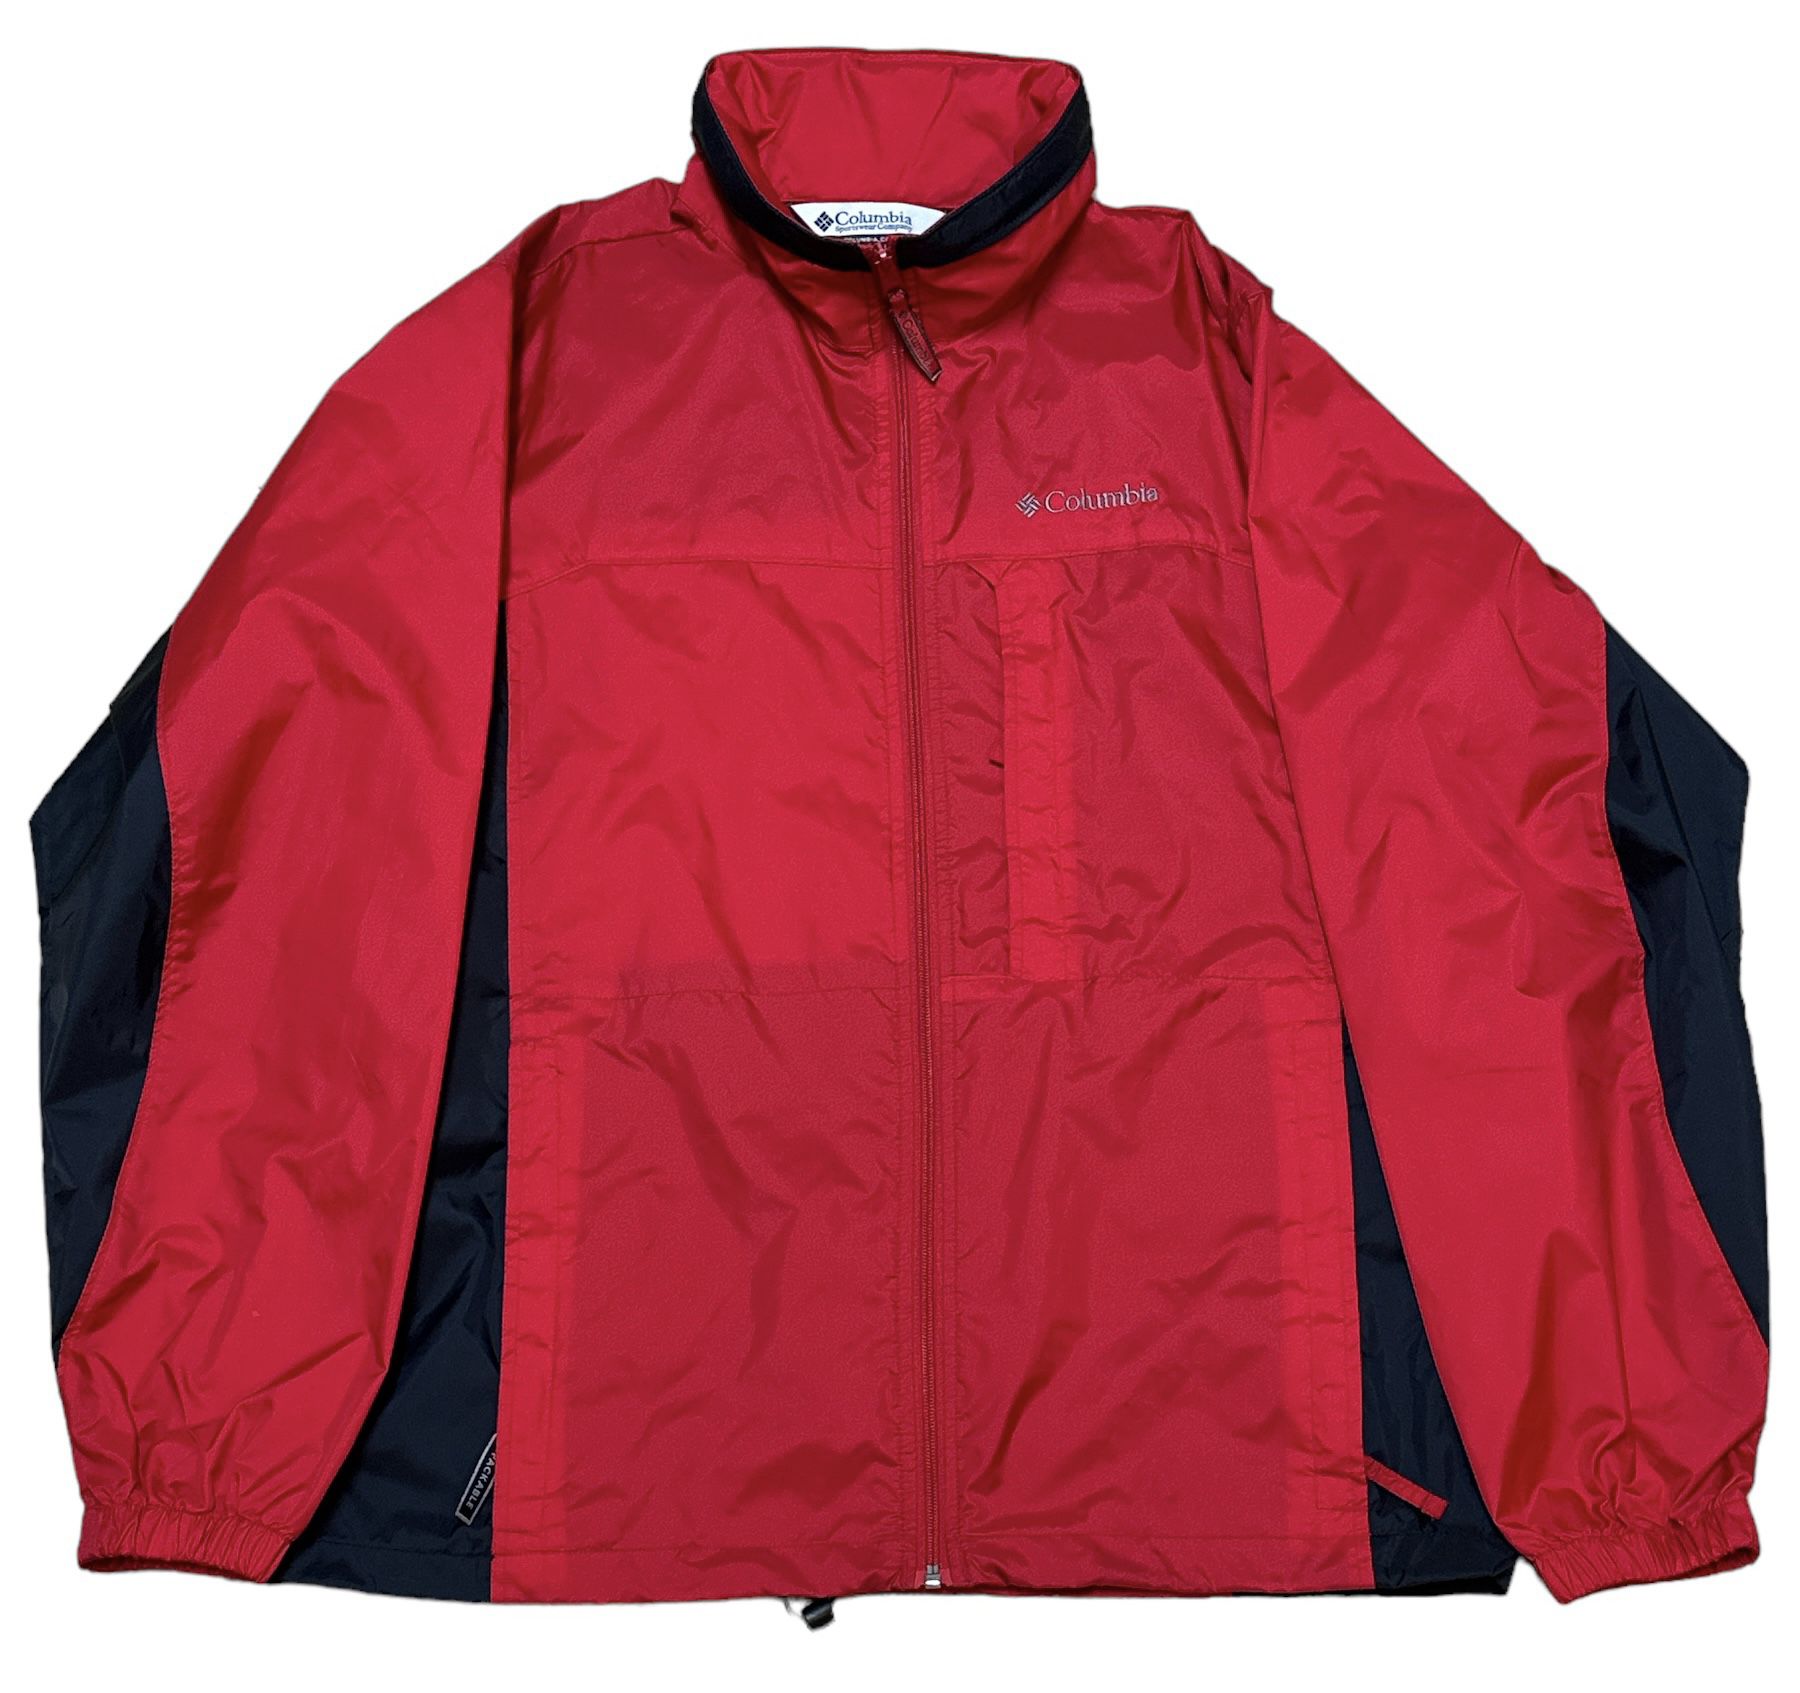 Columbia Men’s Packable Windbreaker Red Black Activewear Jacket Size M